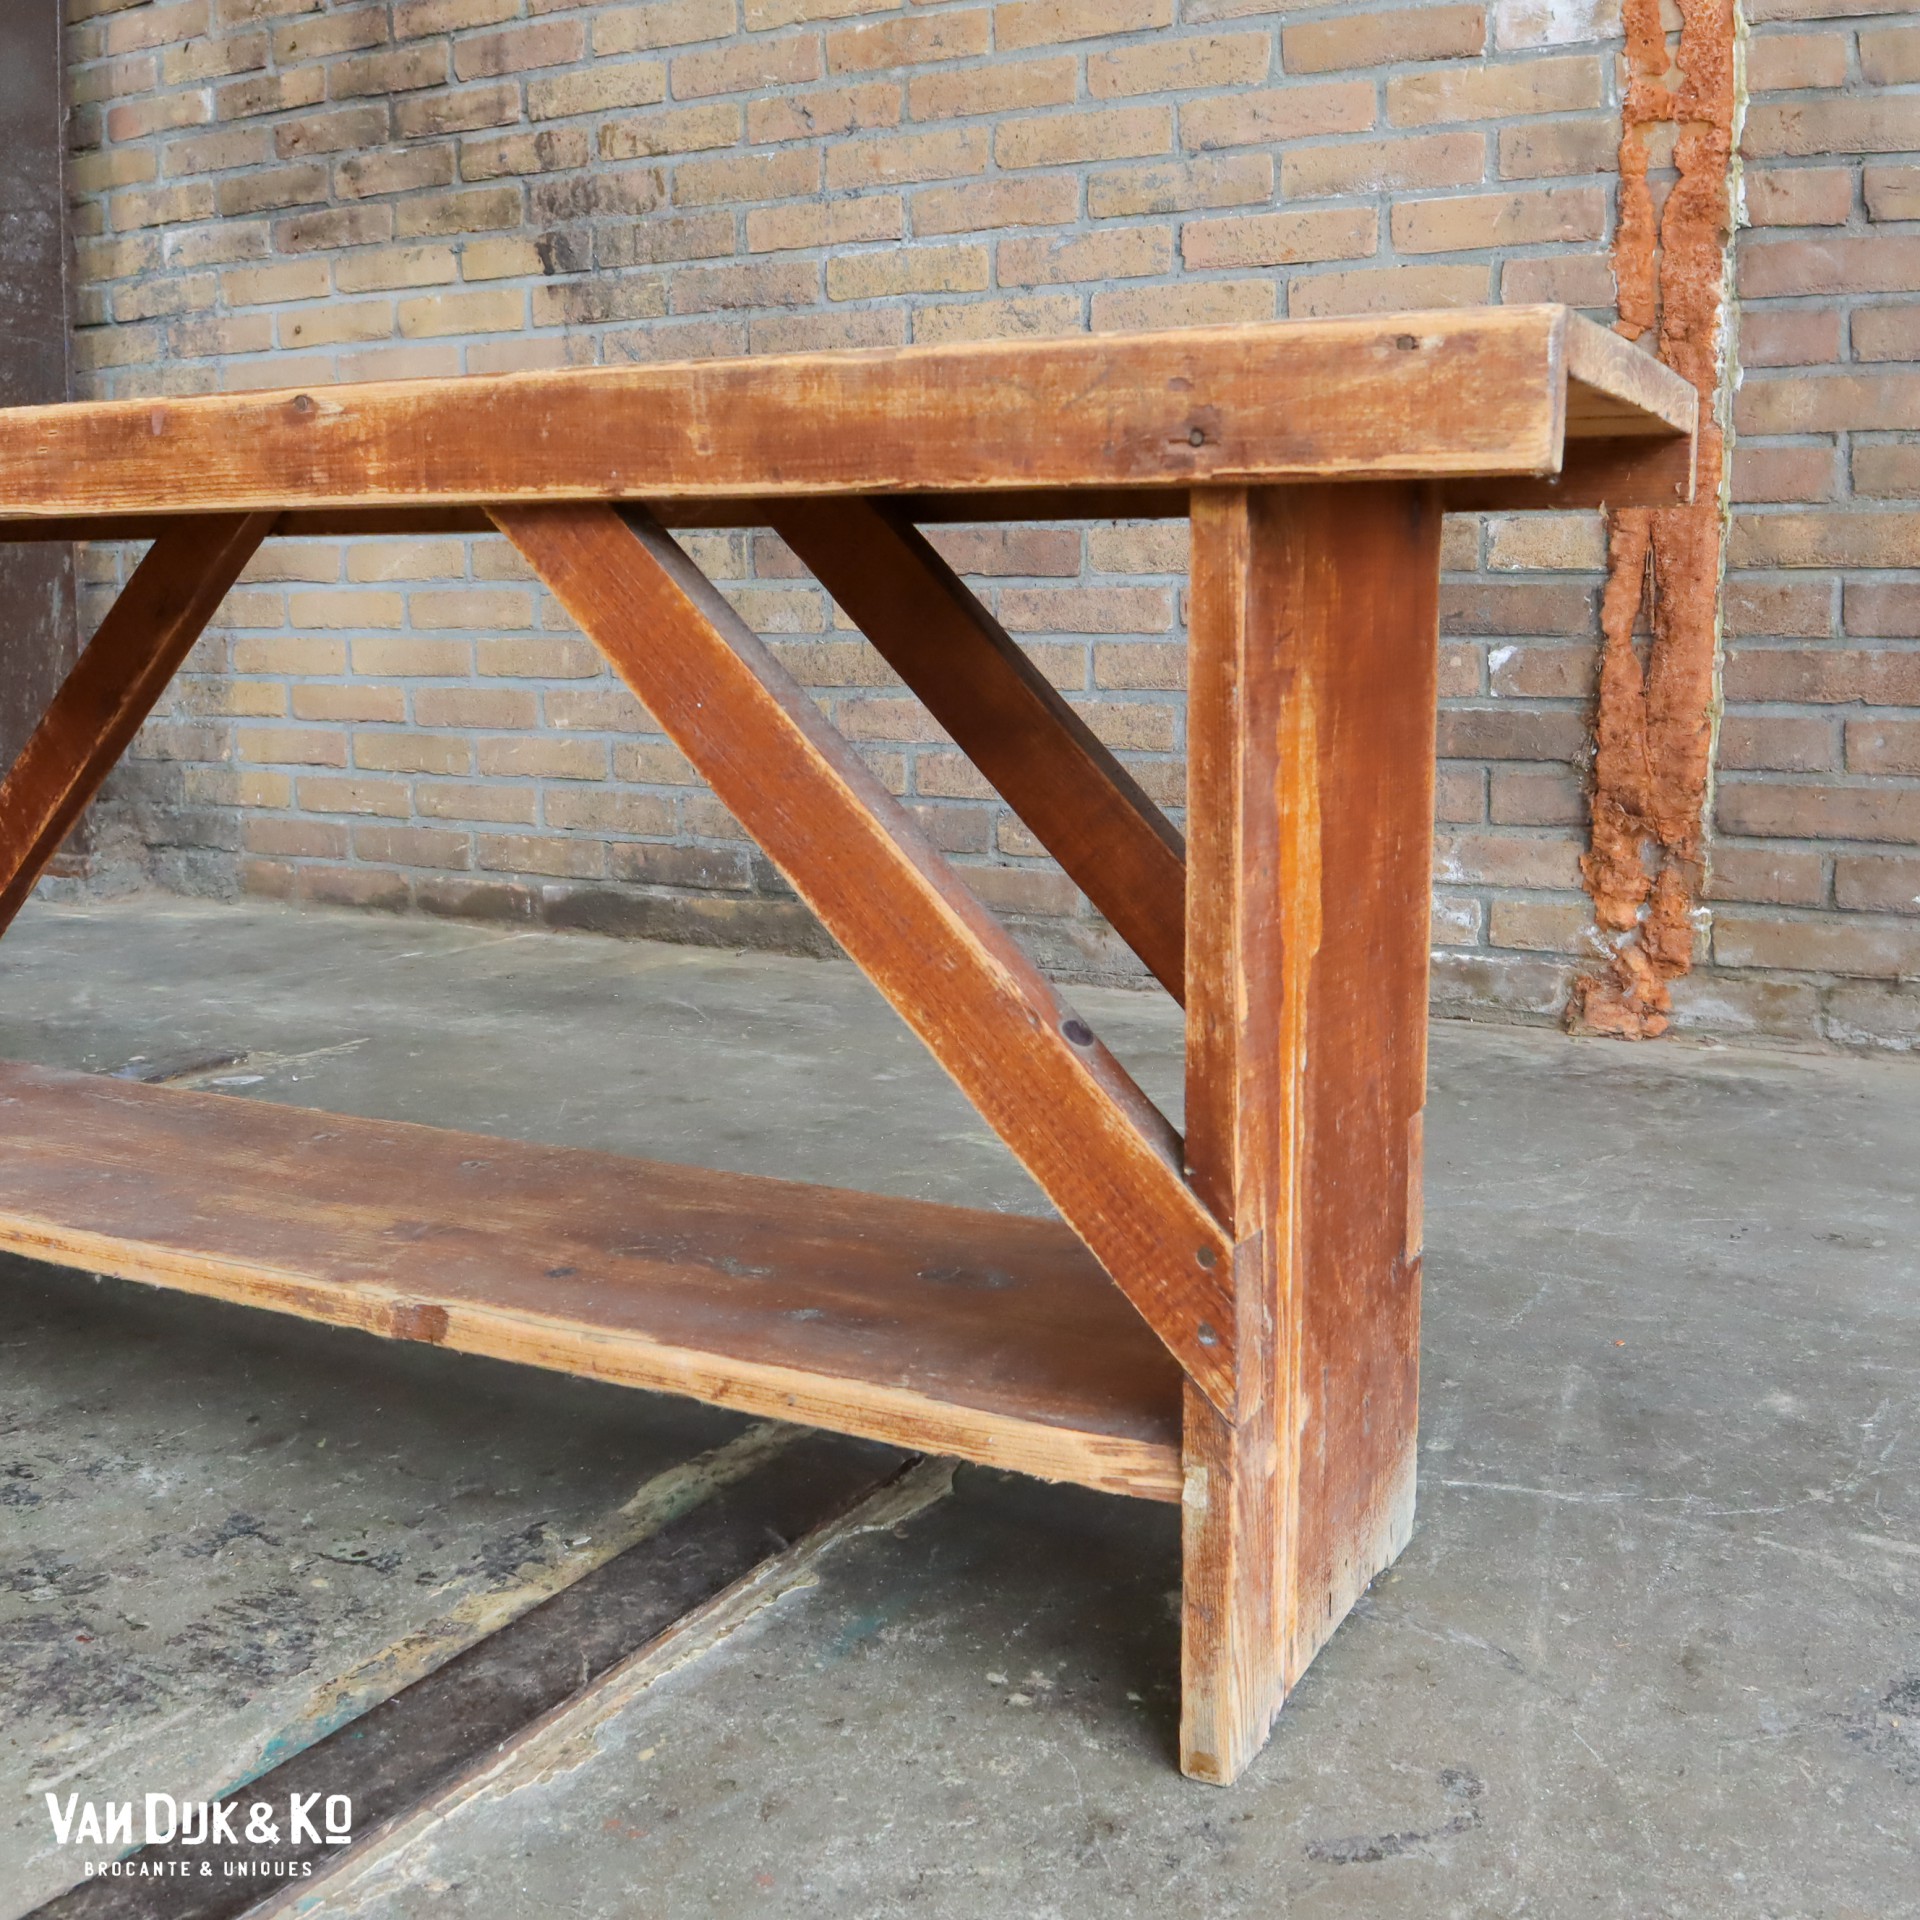 Postbode kip Vergevingsgezind Brocante houten bankje » Van Dijk & Ko